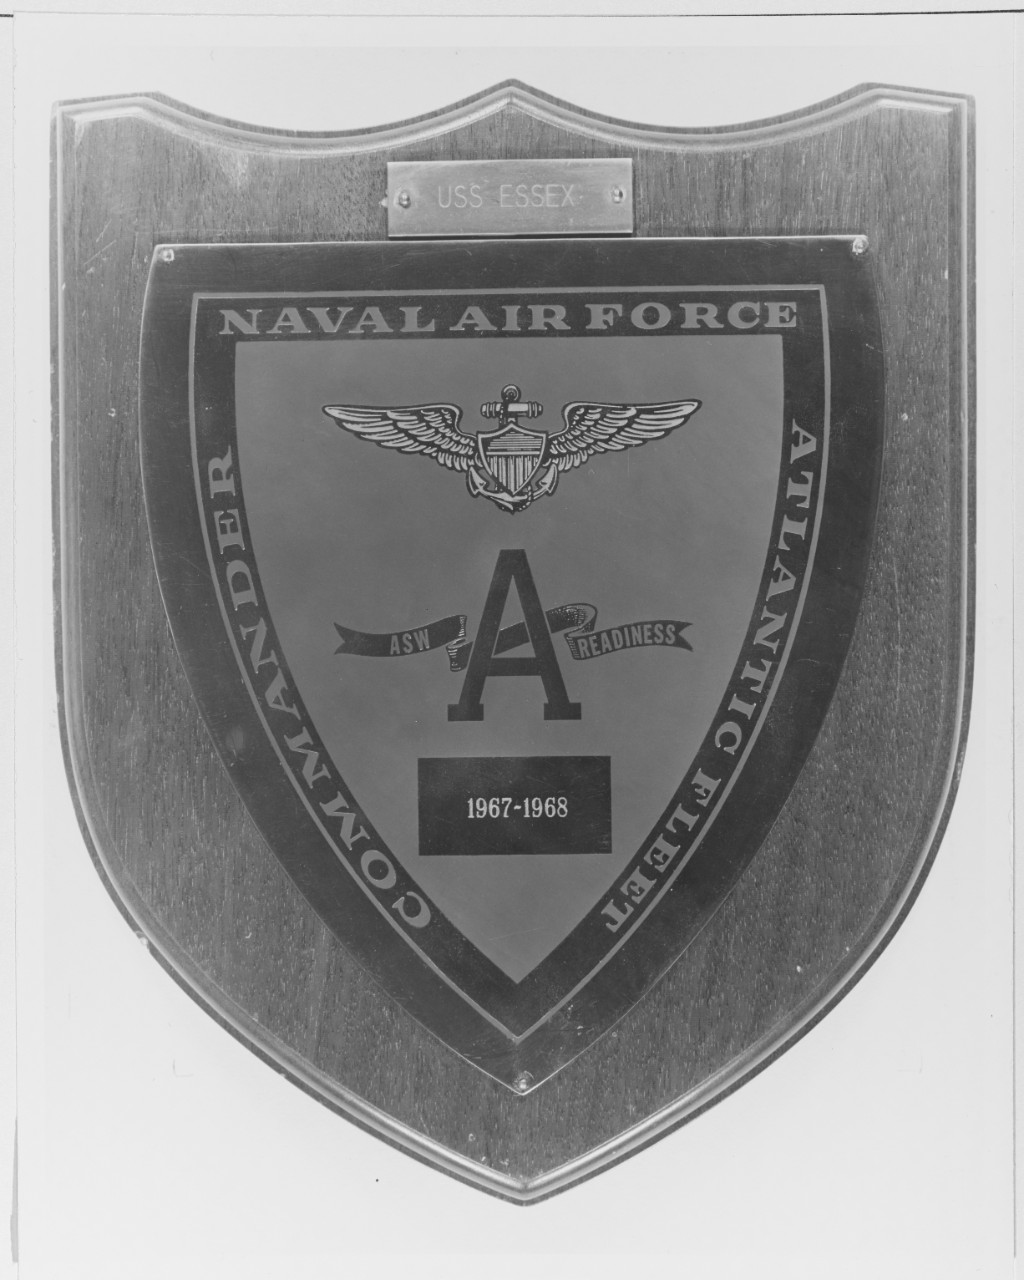 Award to USS ESSEX (CVS - 91)